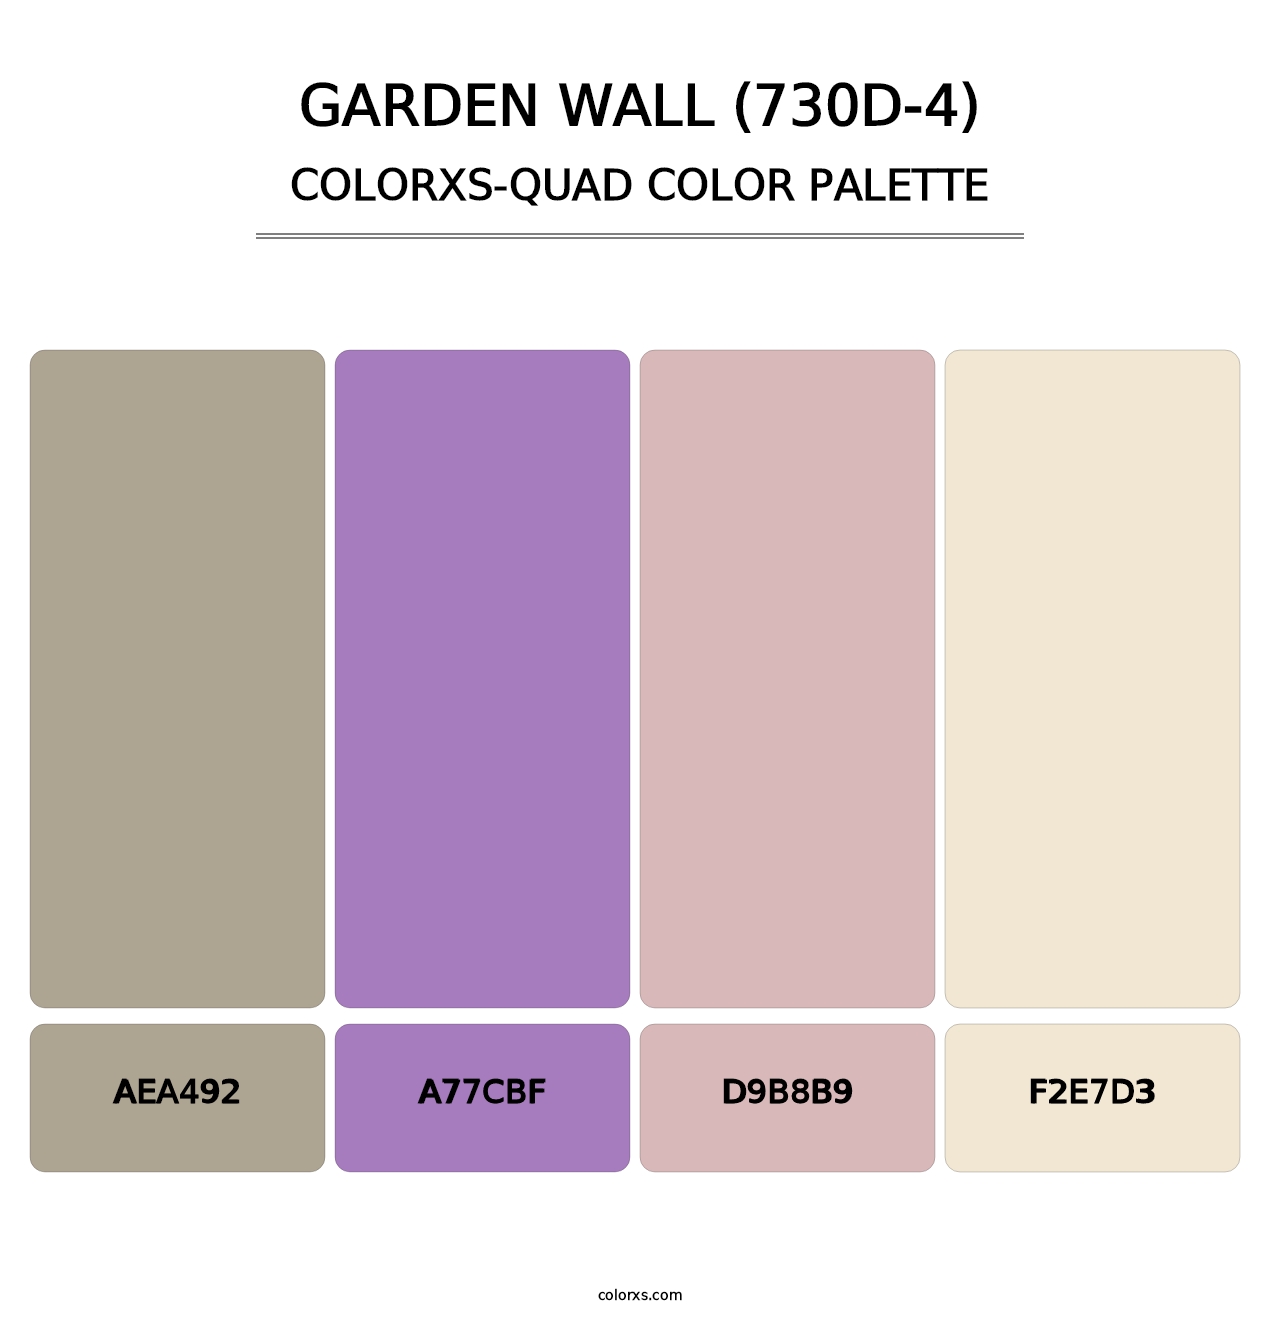 Garden Wall (730D-4) - Colorxs Quad Palette